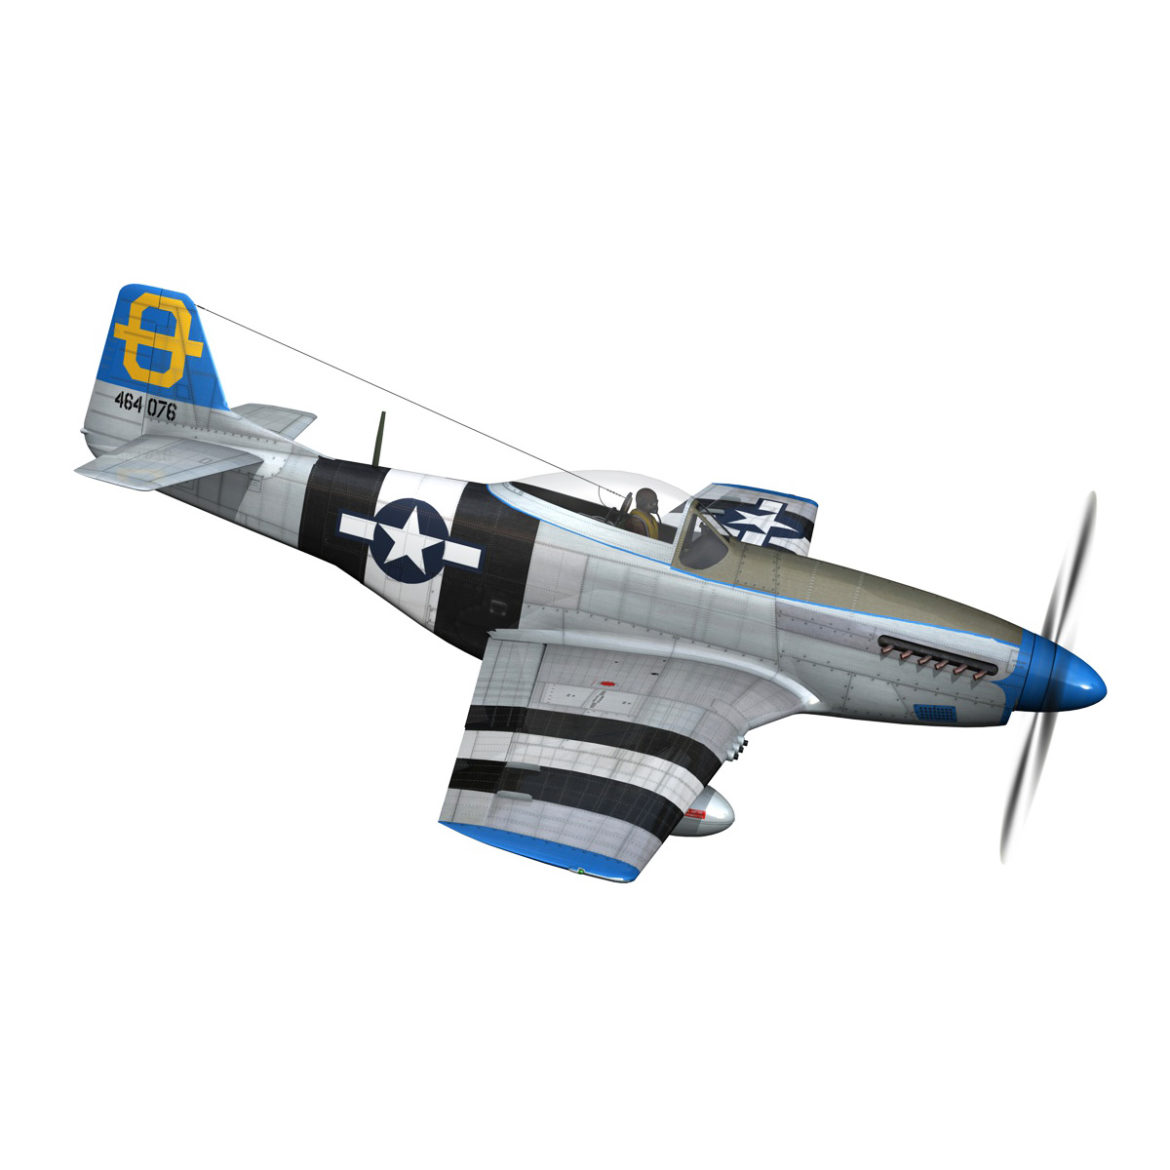 north american p-51d mustang – jumpin jacques 3d model fbx c4d lwo obj 294328